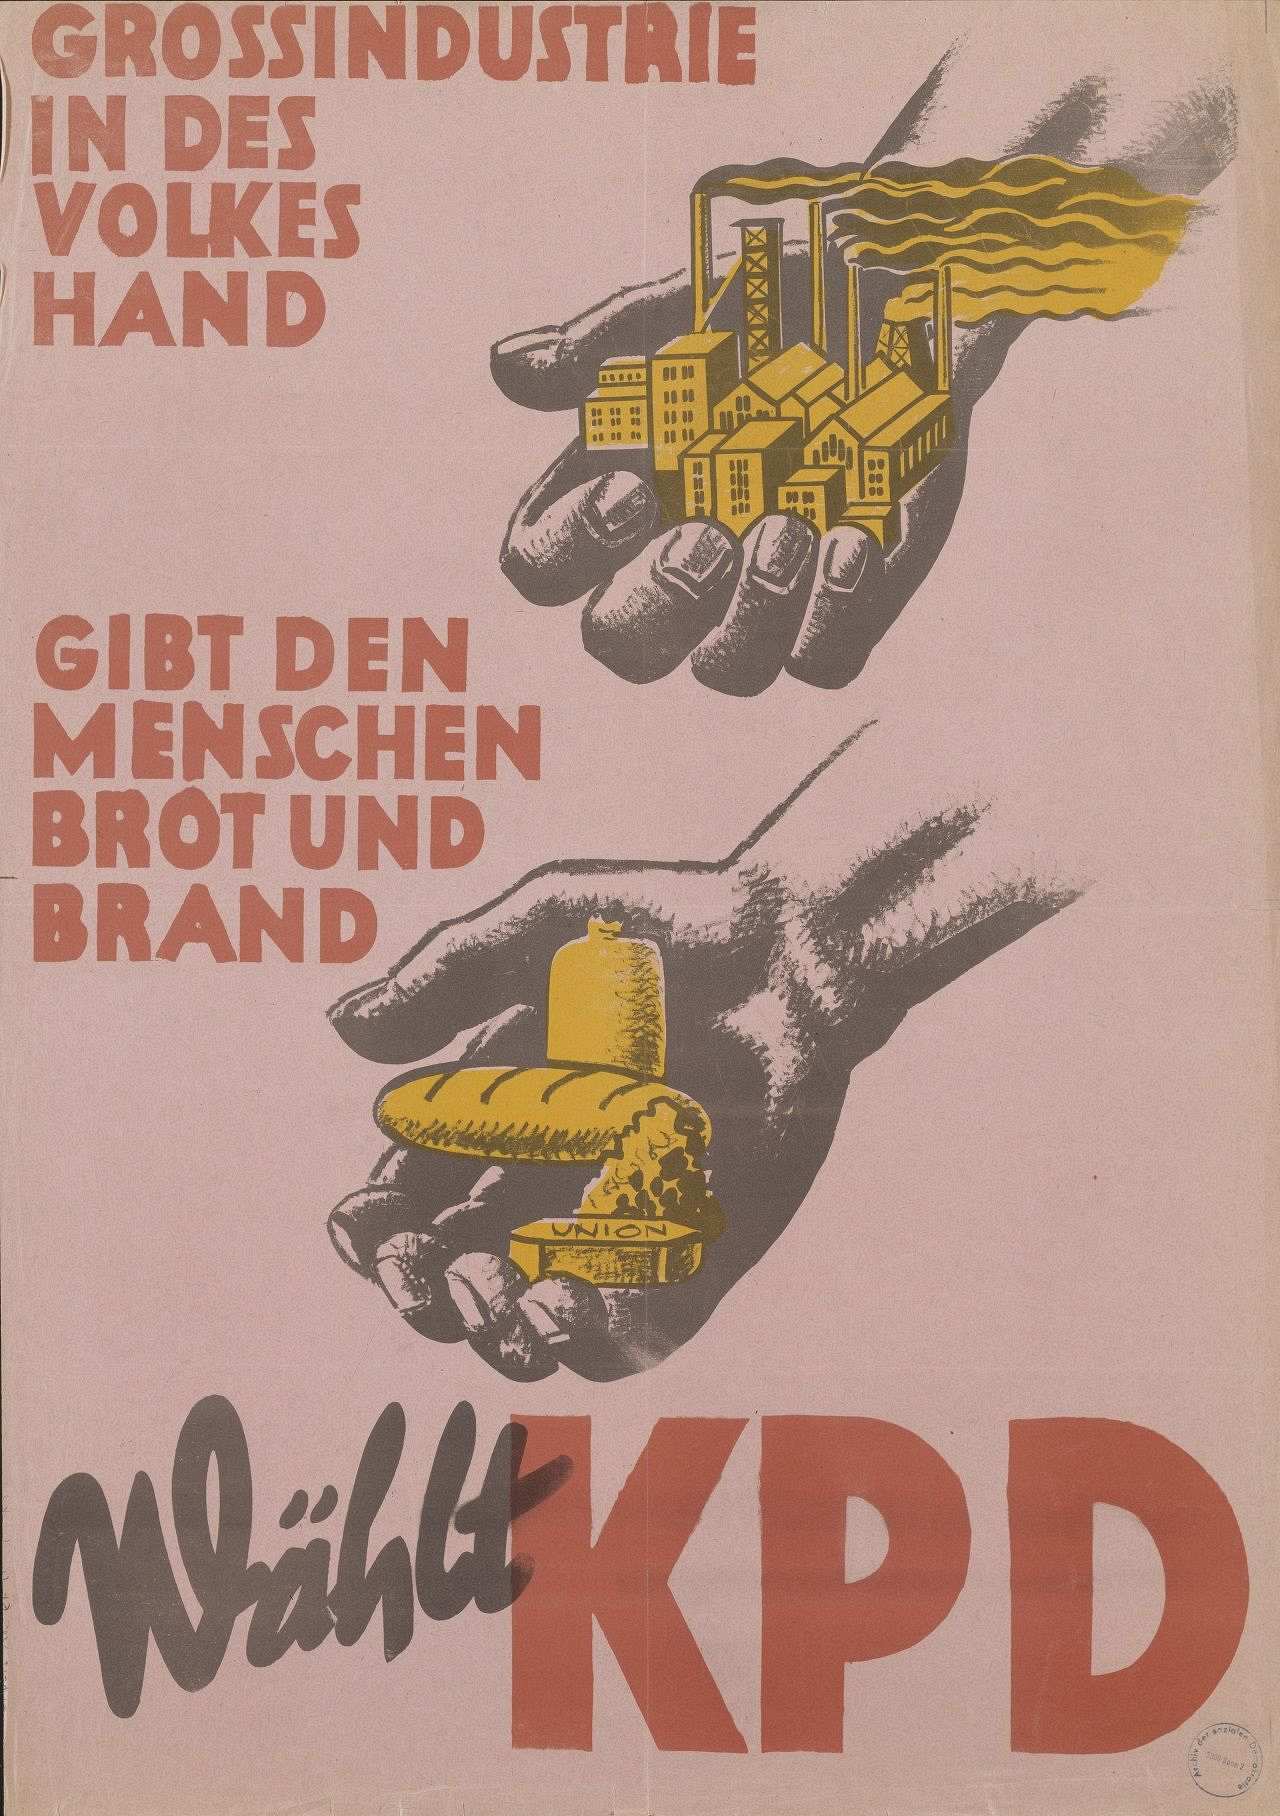 Rosafarbenes Plakat mit der Darstellung zweier Hände. Die eine hält eine Fabrik und die andere hält Brot, Käse und Kohle.
Rote Beschriftung: 